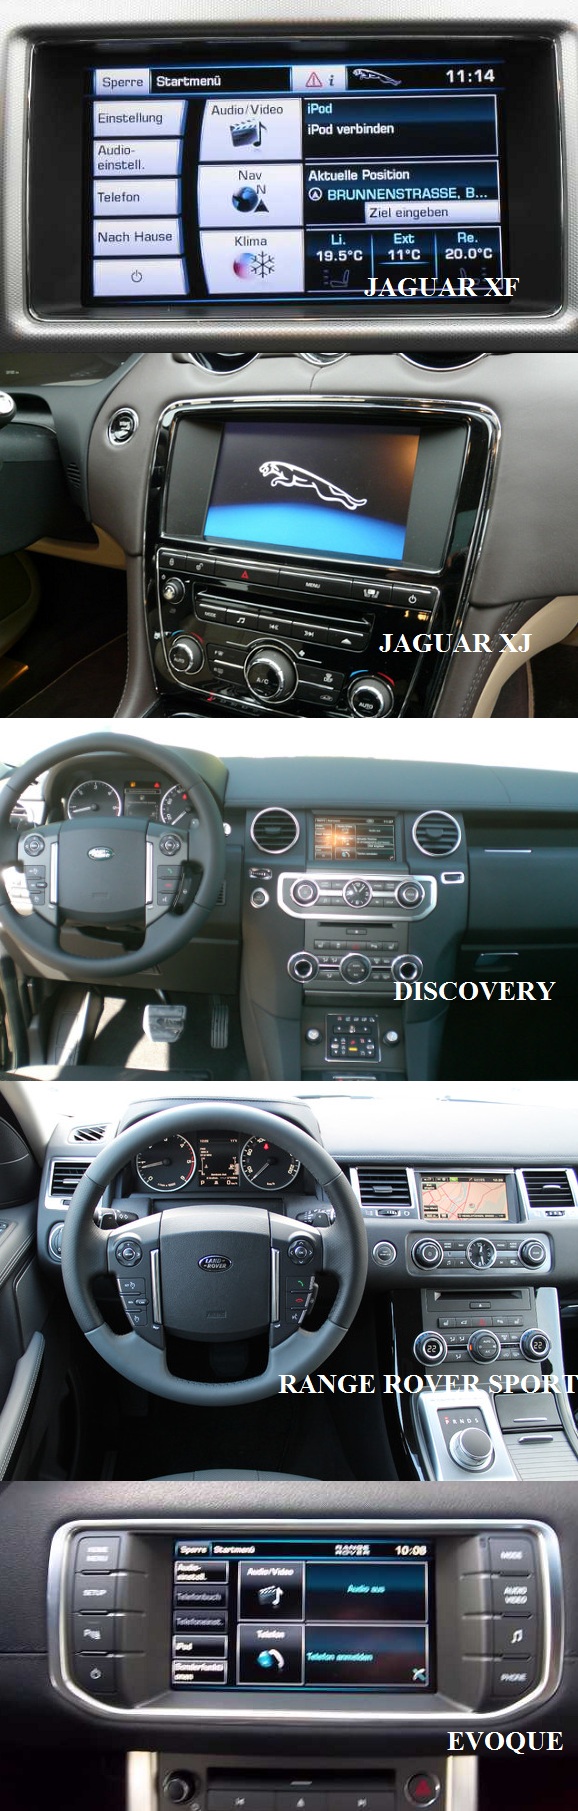 compatibilitate video in miscare jaguar range rover